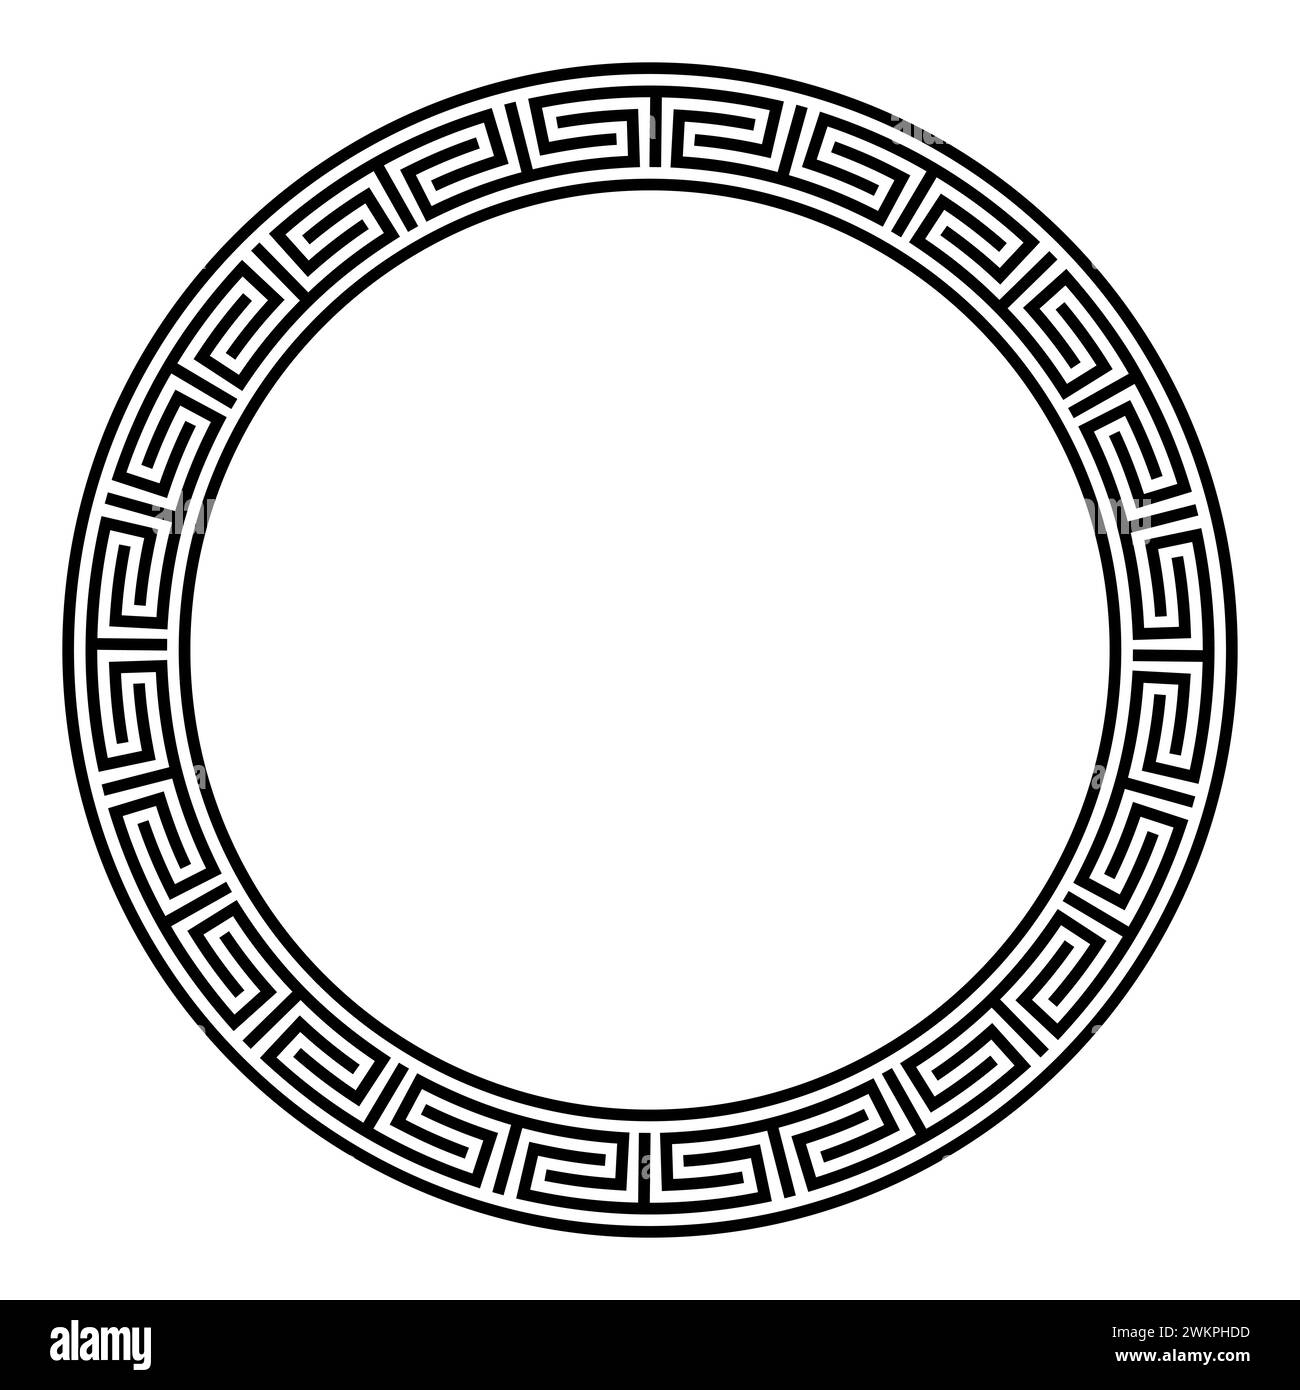 Chinesisches Mäandermuster, kreisförmiger Rahmen. Dekorativer Rundrand mit abgetrennten und richtungswechselnden Mäandern, ein wiederholtes Motiv. Stockfoto